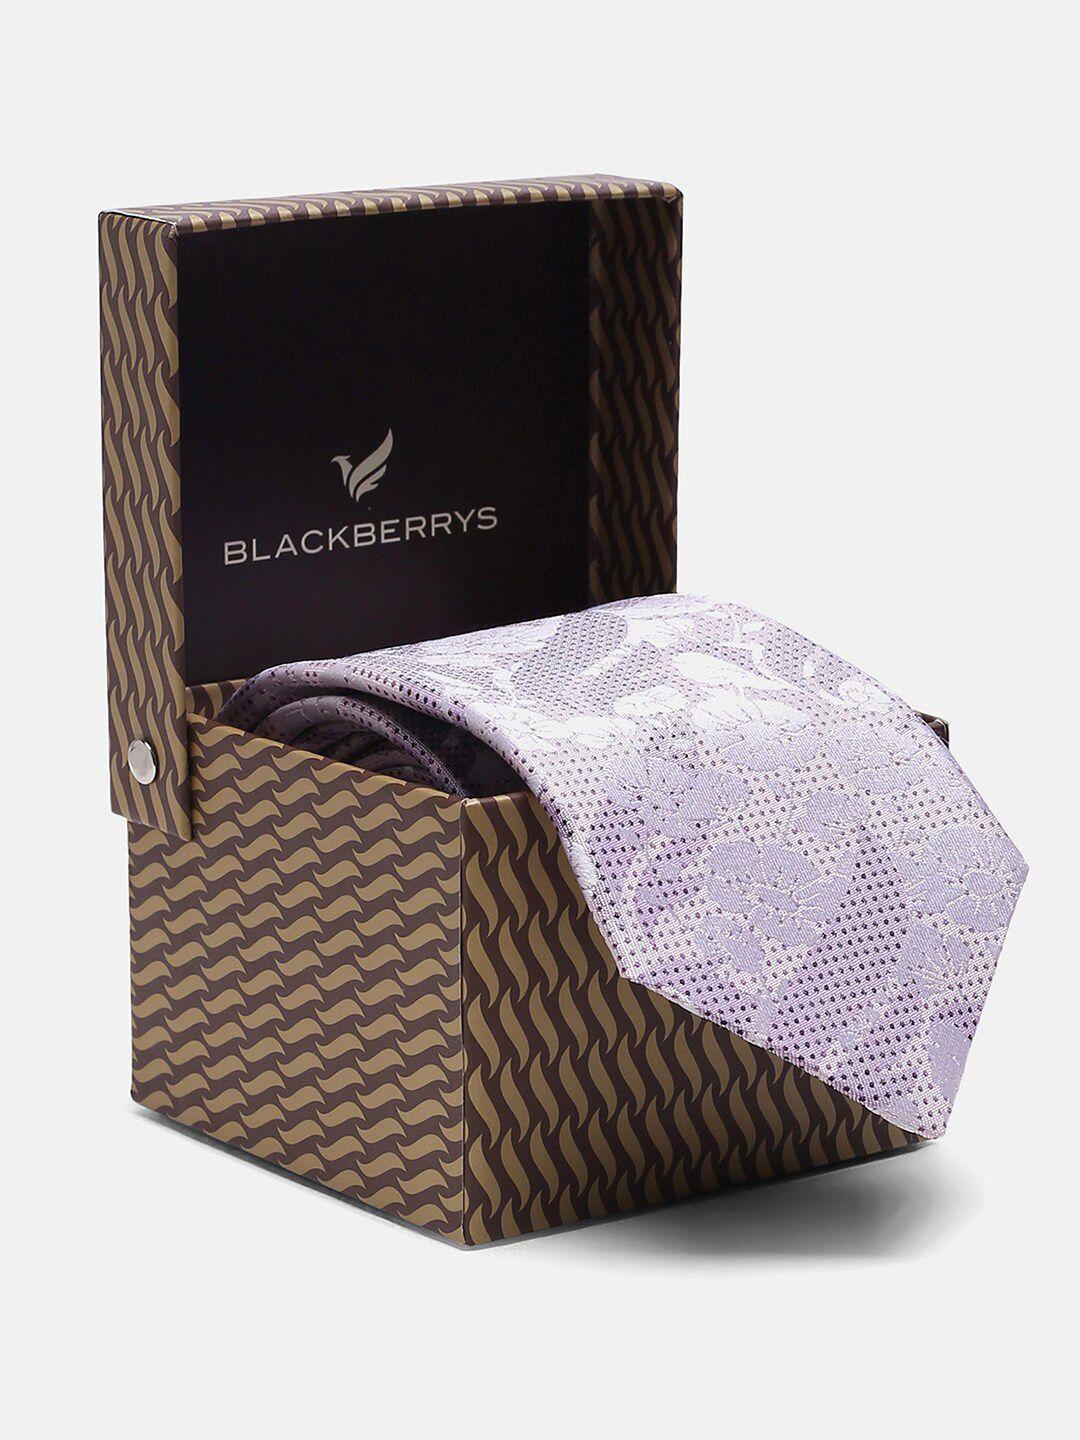 blackberrys printed silk skinny tie